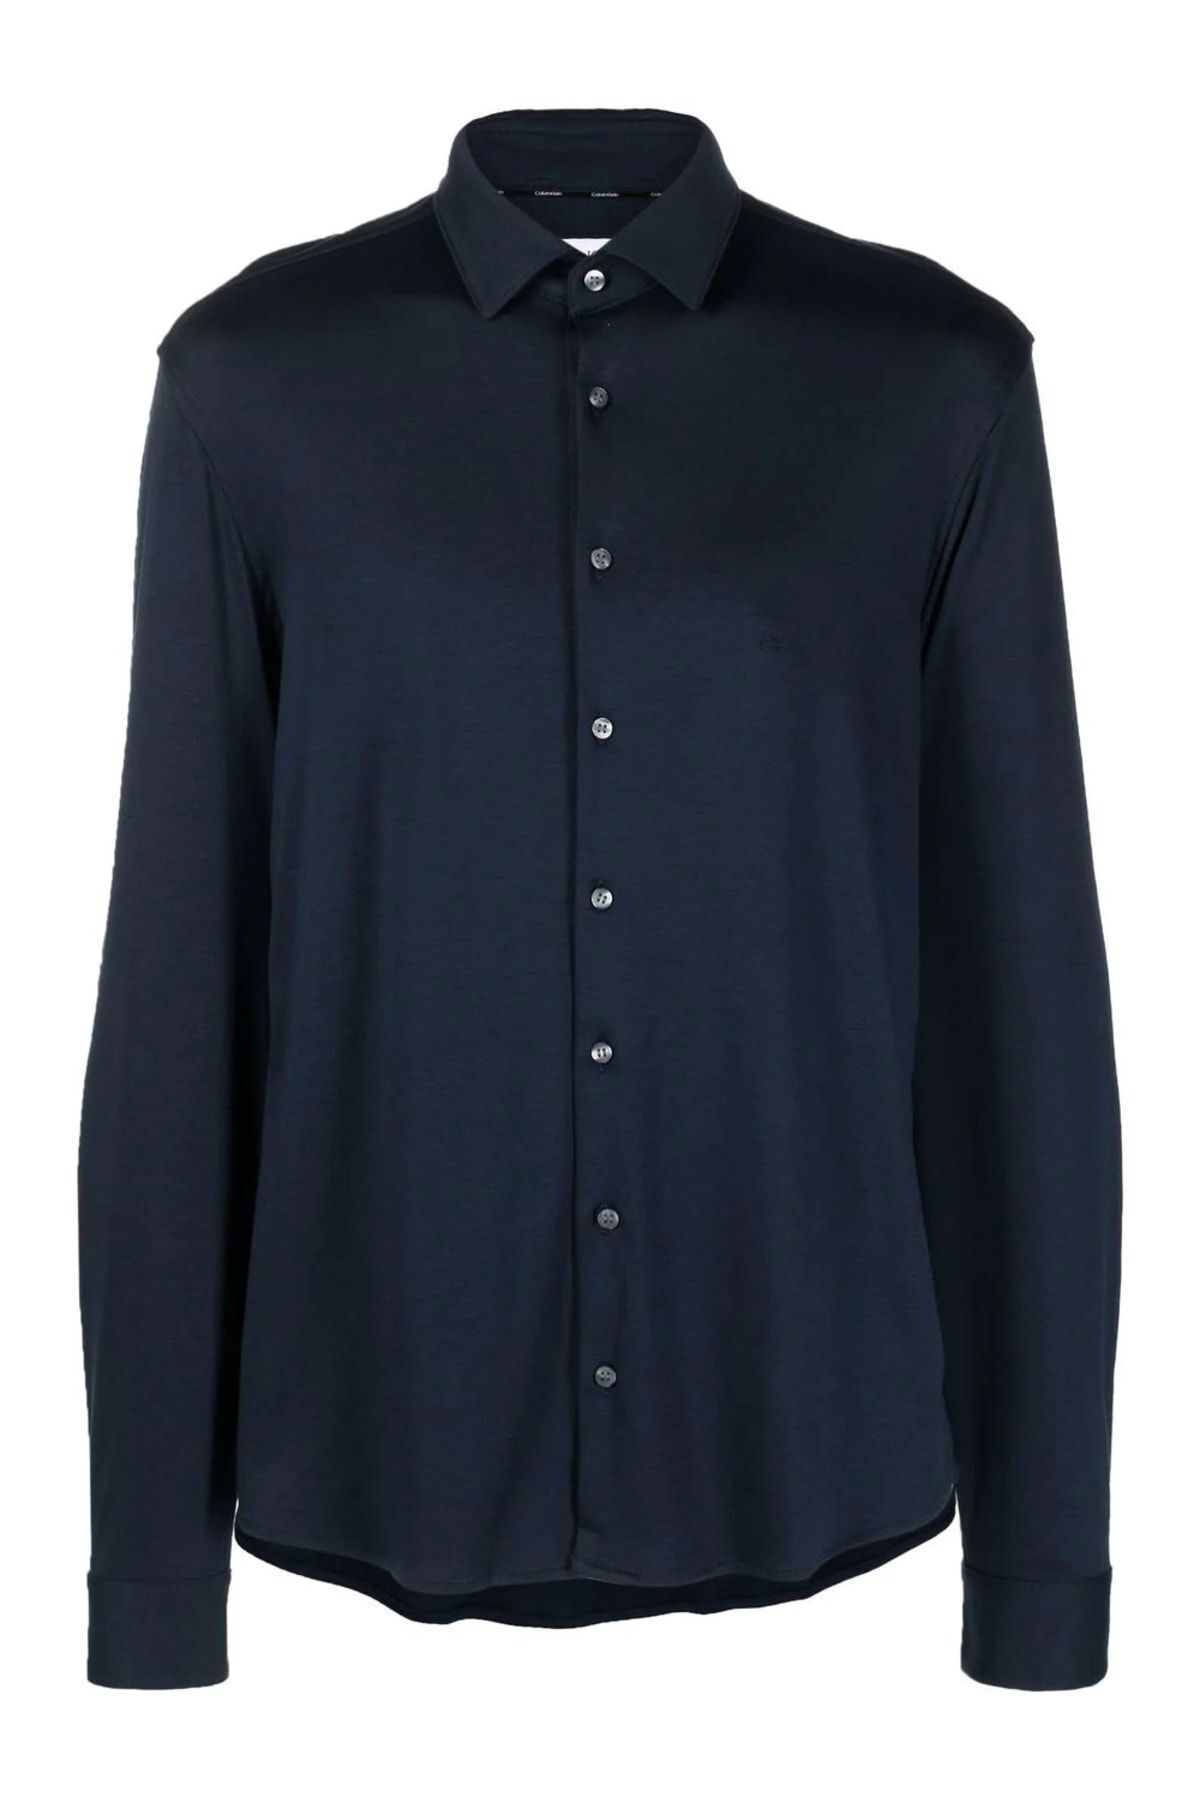 Calvin Klein Erkek %100 Pamuklu İnce Düğmeli Mavi Gömlek K10k108120-0g2